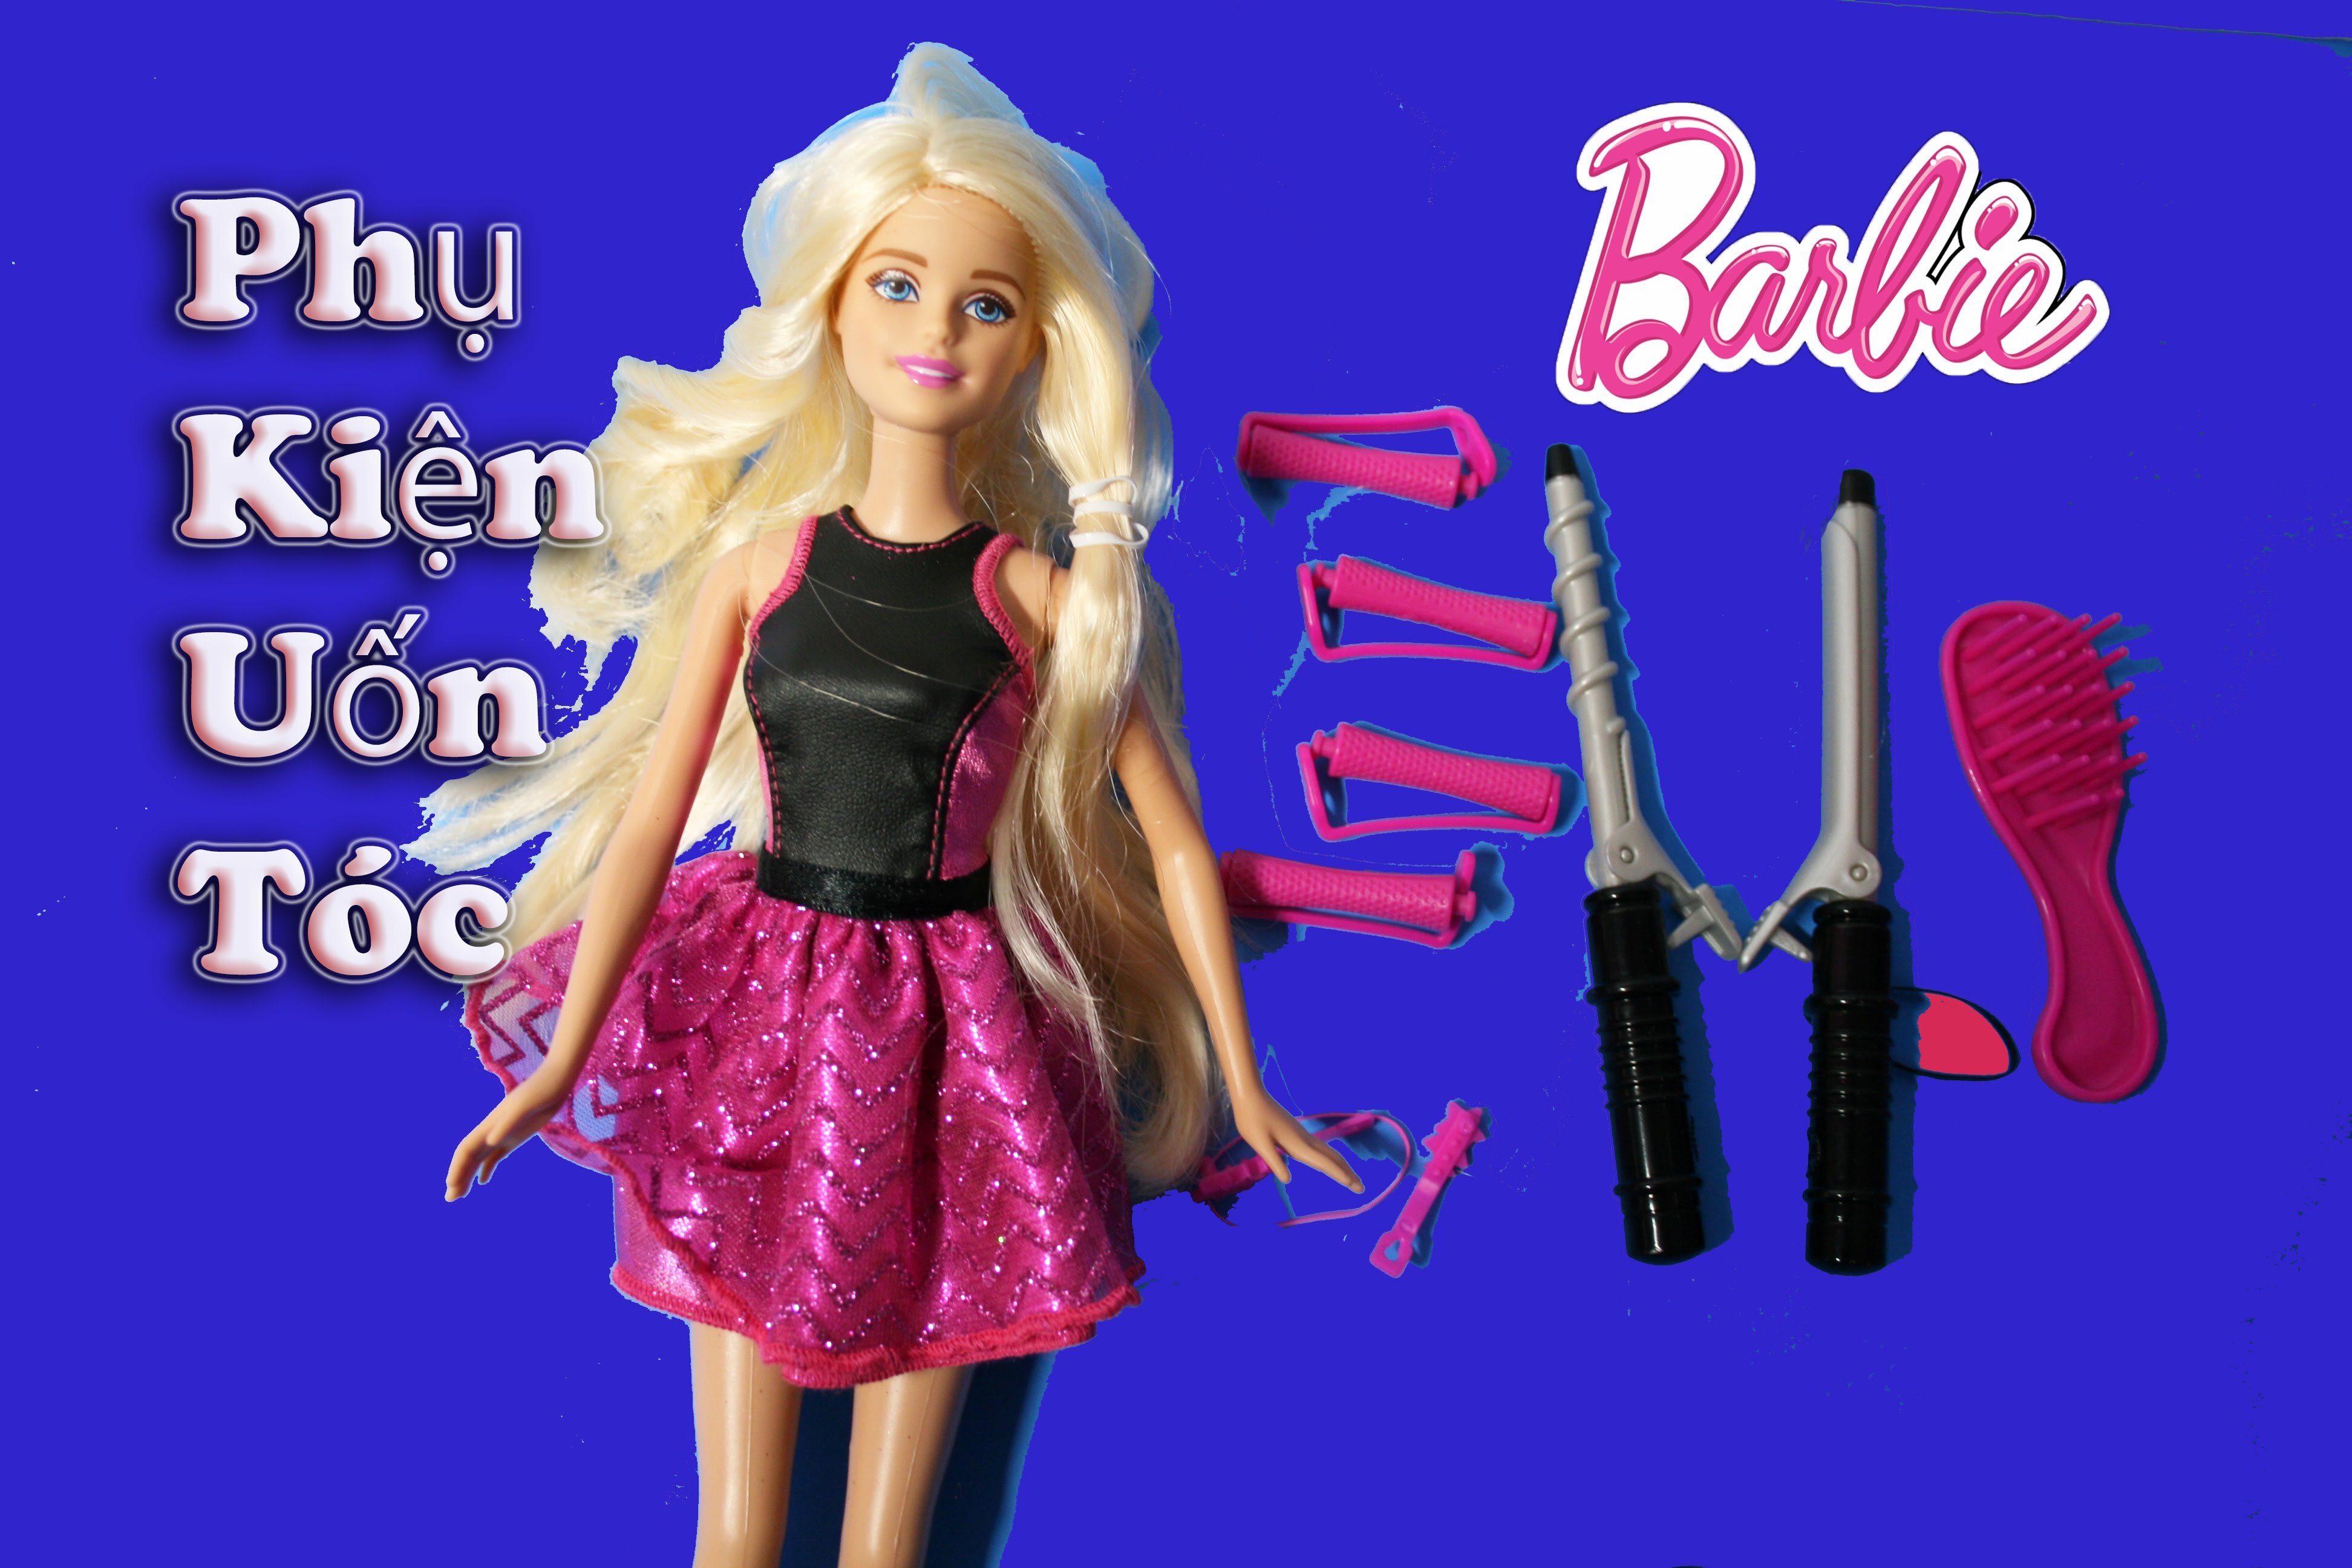 Đồ chơi làm tóc búp bê Barbie